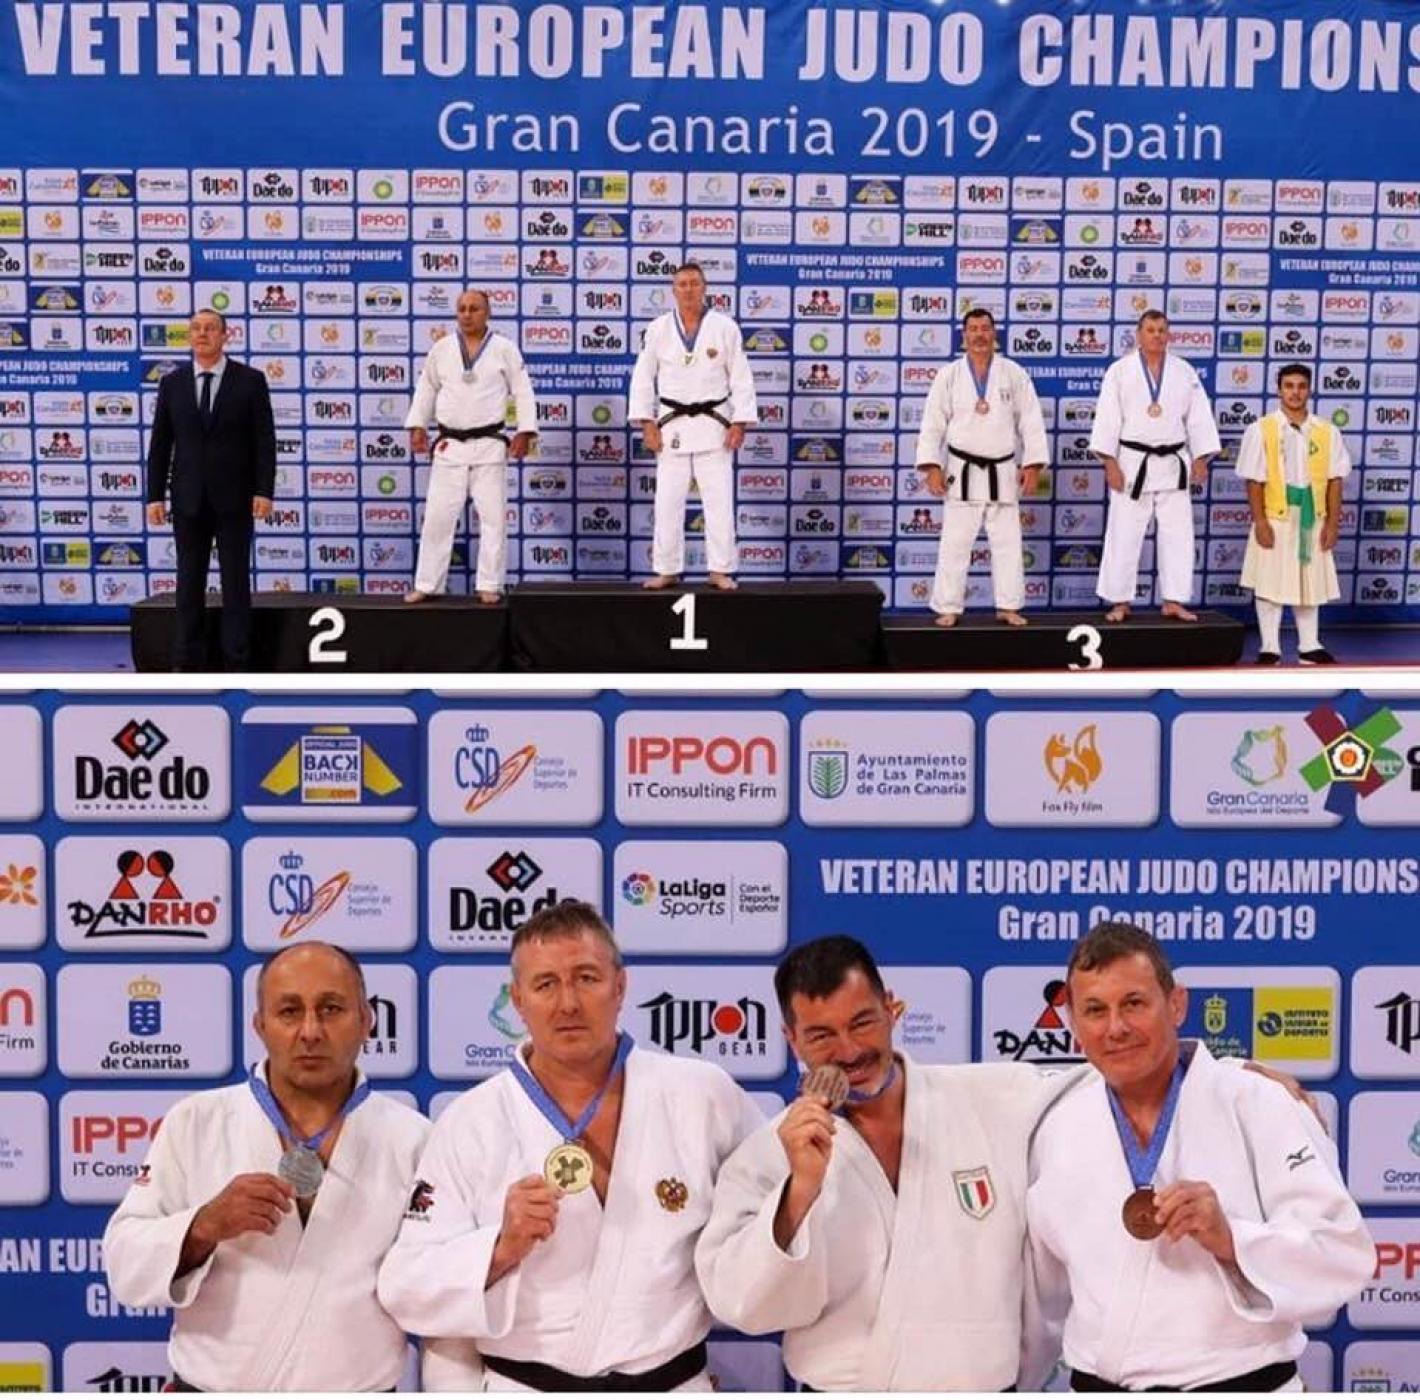 images/liguria/judo/medium/vettori_euro.jpg